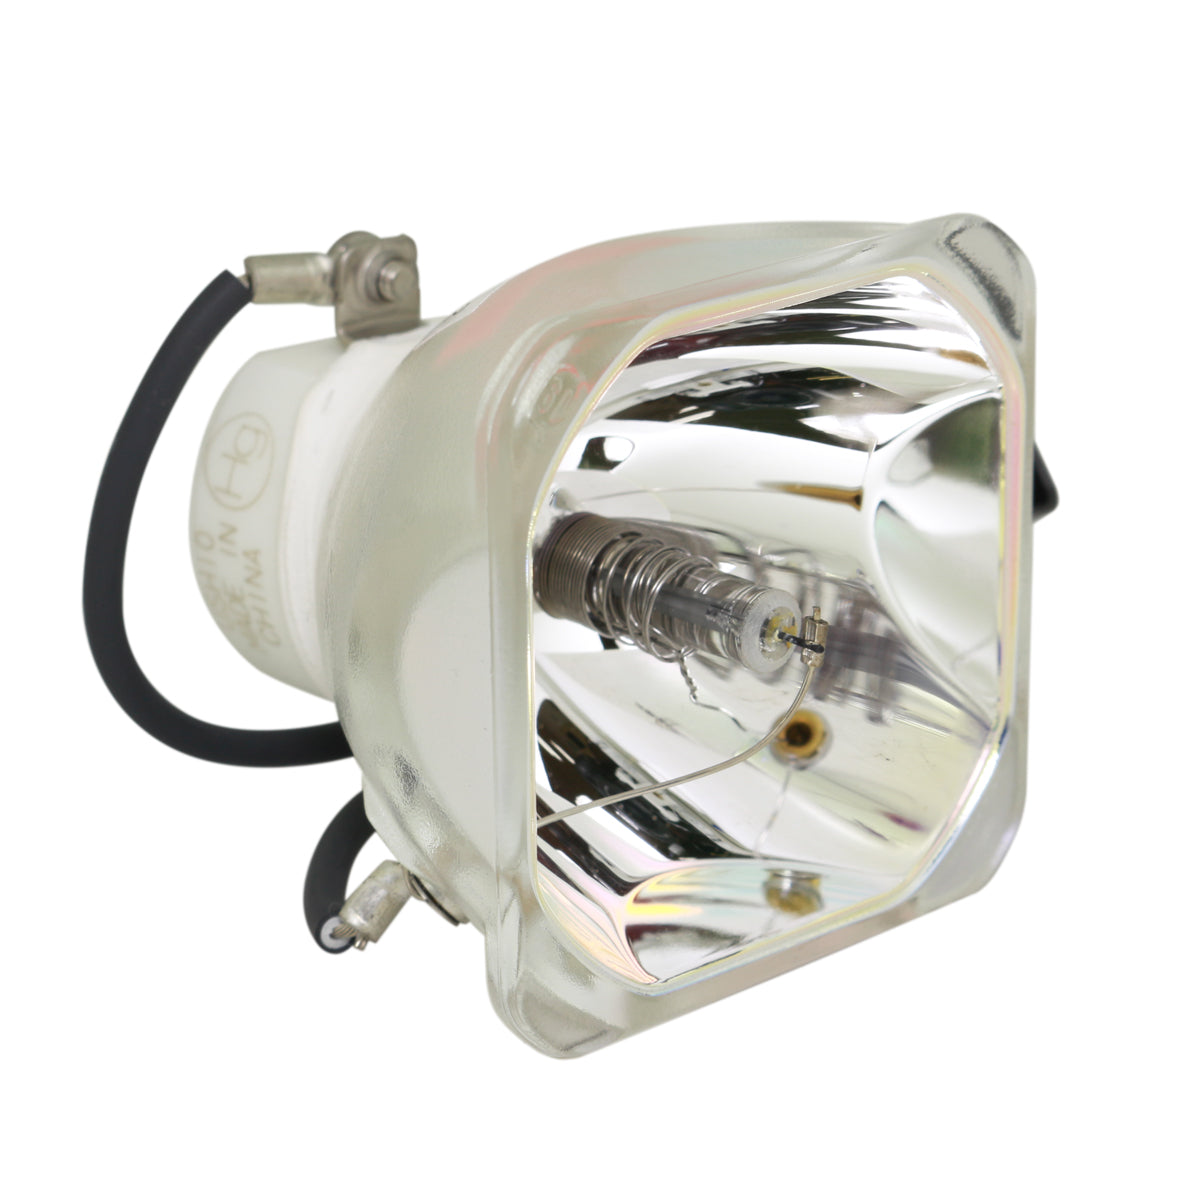 Claxan 23040007 Ushio Projector Bare Lamp